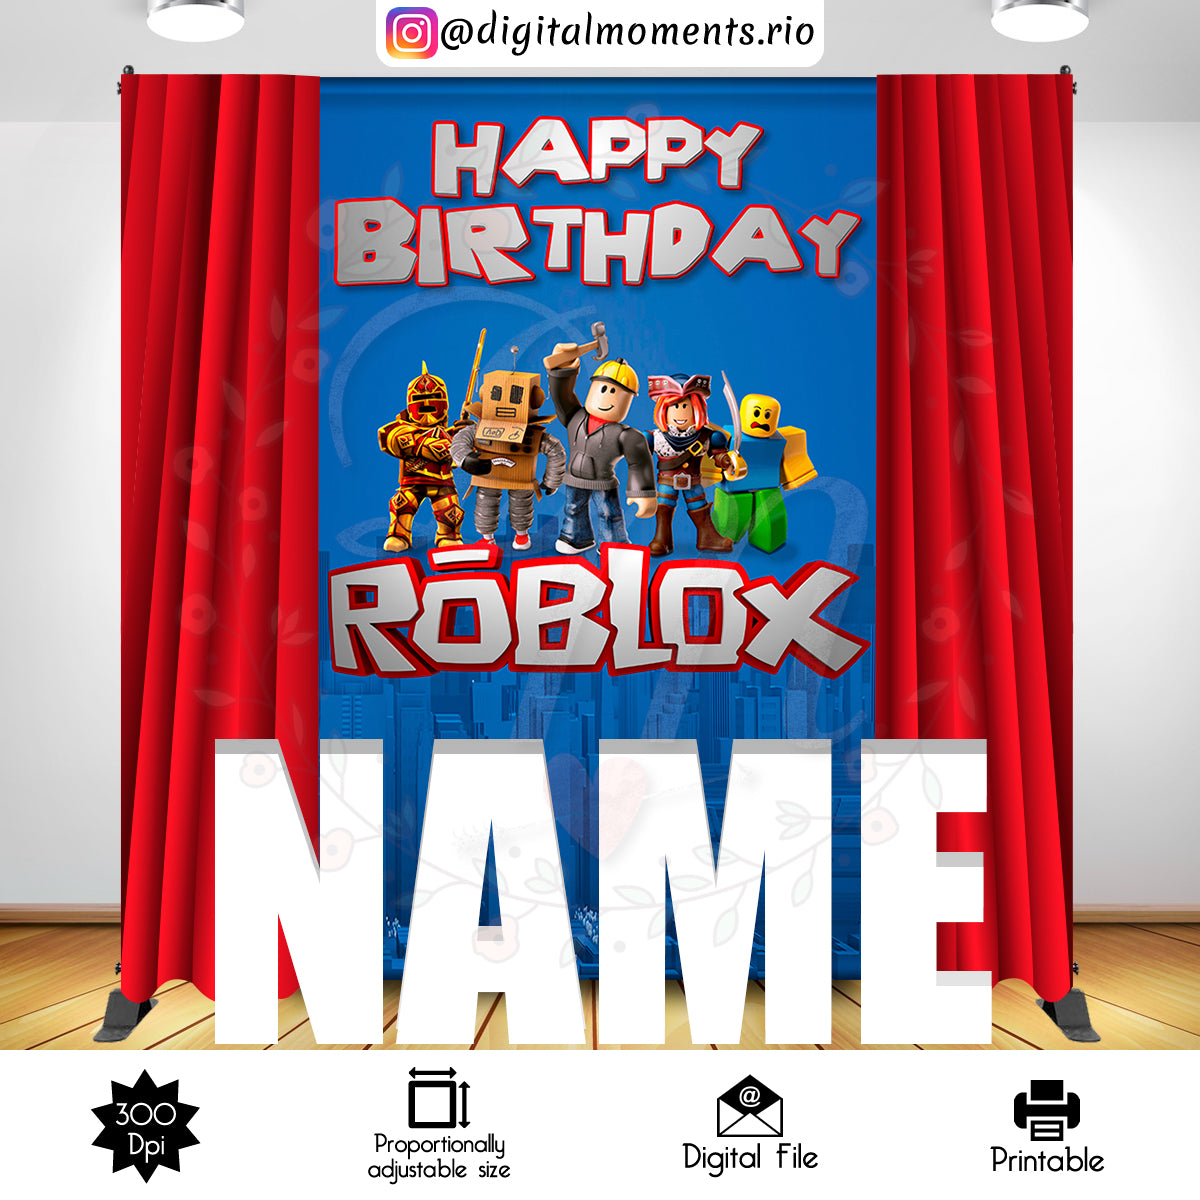 Roblox 8x8 Digital Backdrop Design, Instant Download – Digital Moments Rio